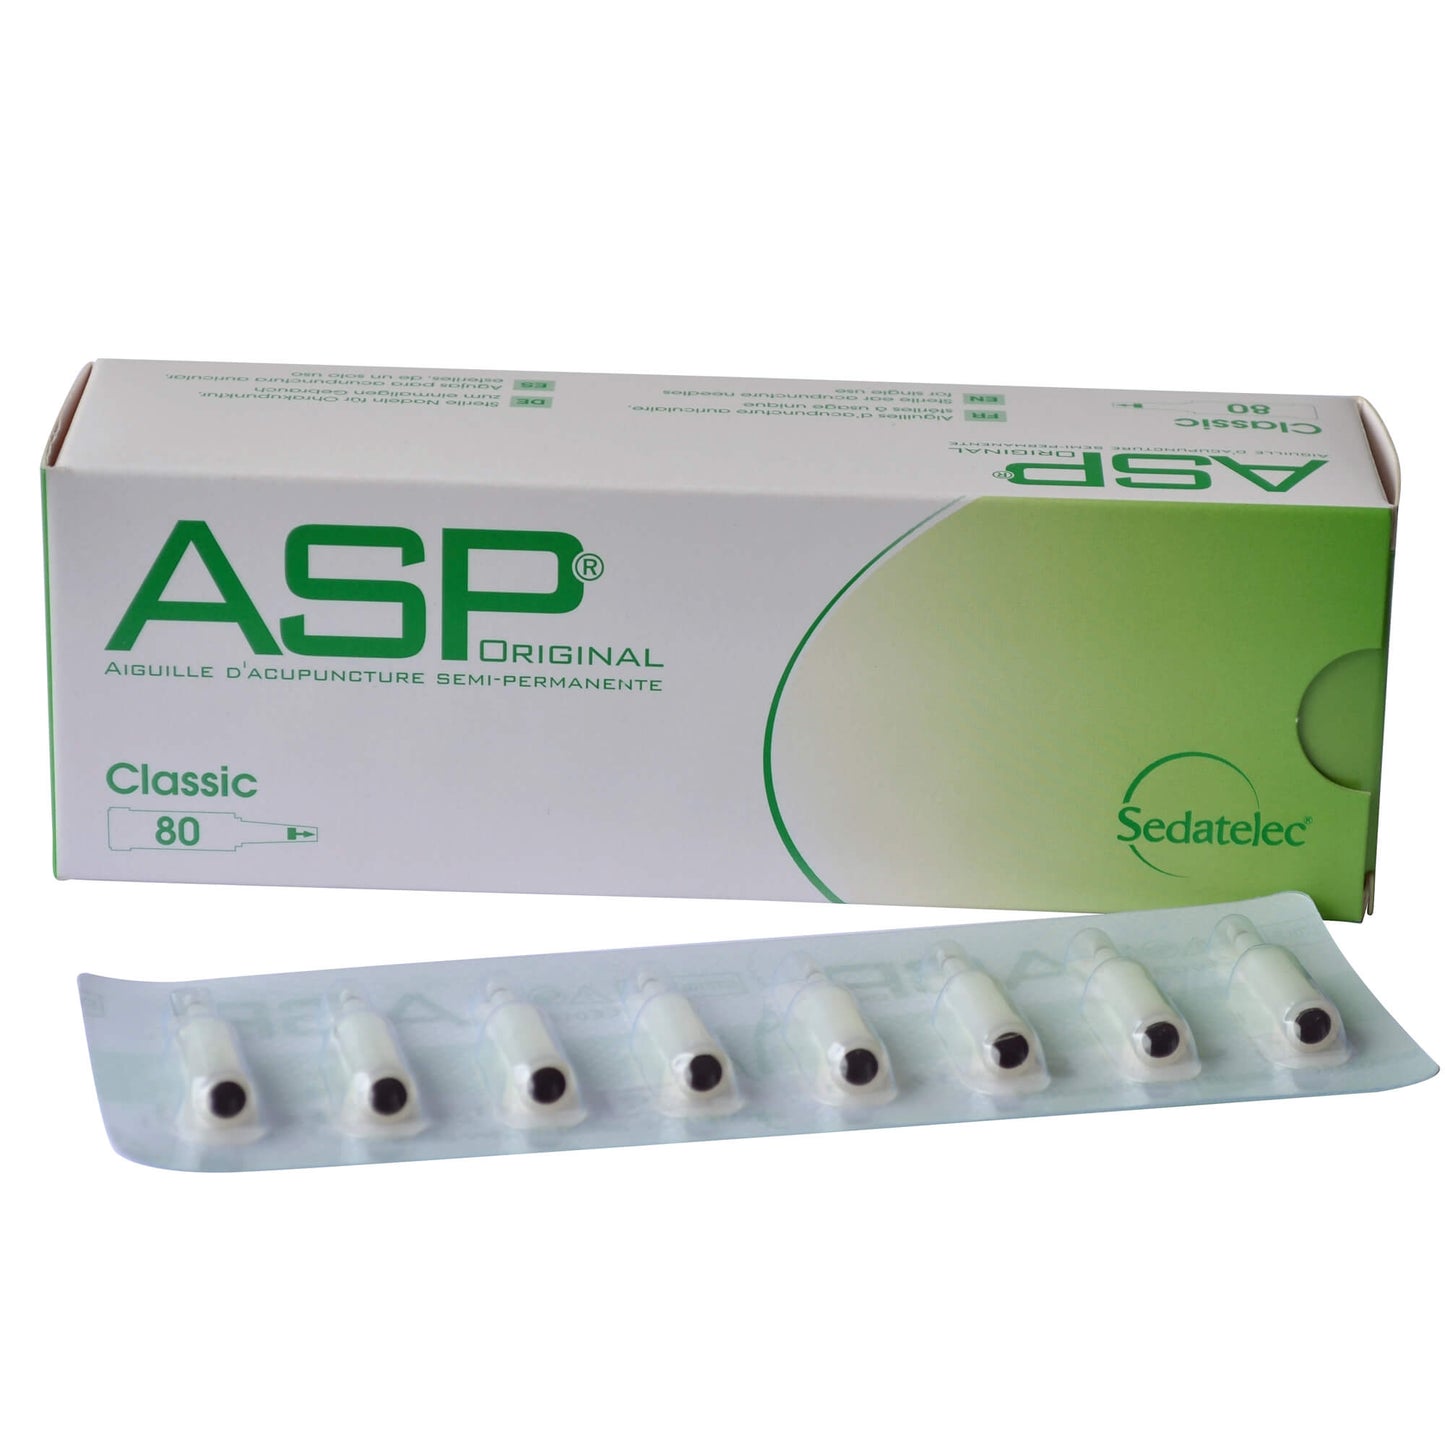 ASP Classic 80 acupunctuurnaalden auricular